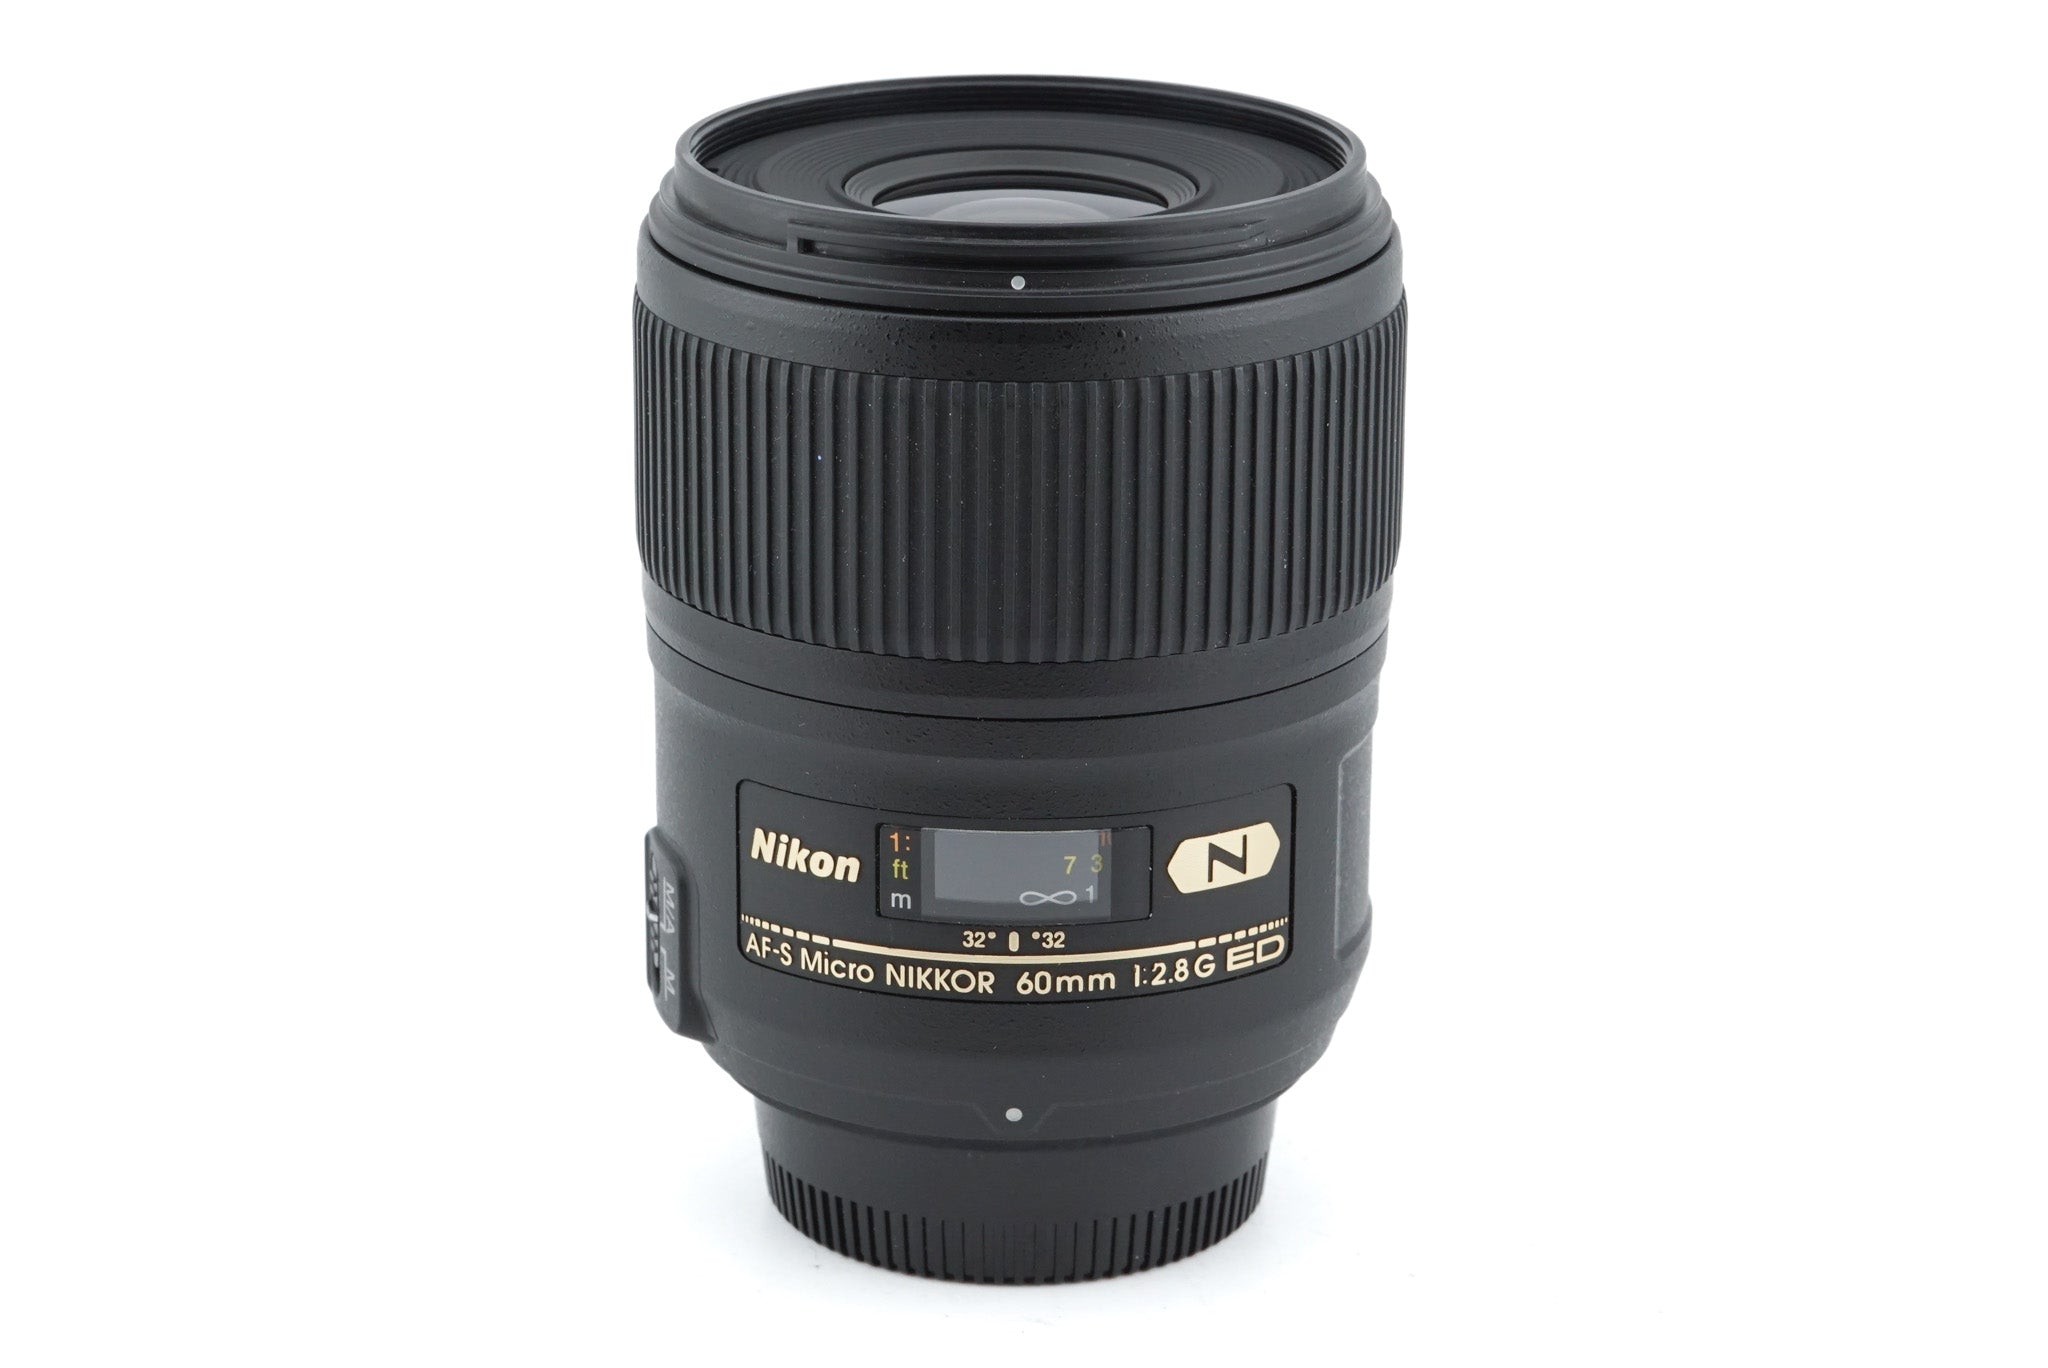 Nikon 60mm f2.8 G ED N AF-S Micro Nikkor - Lens – Kamerastore